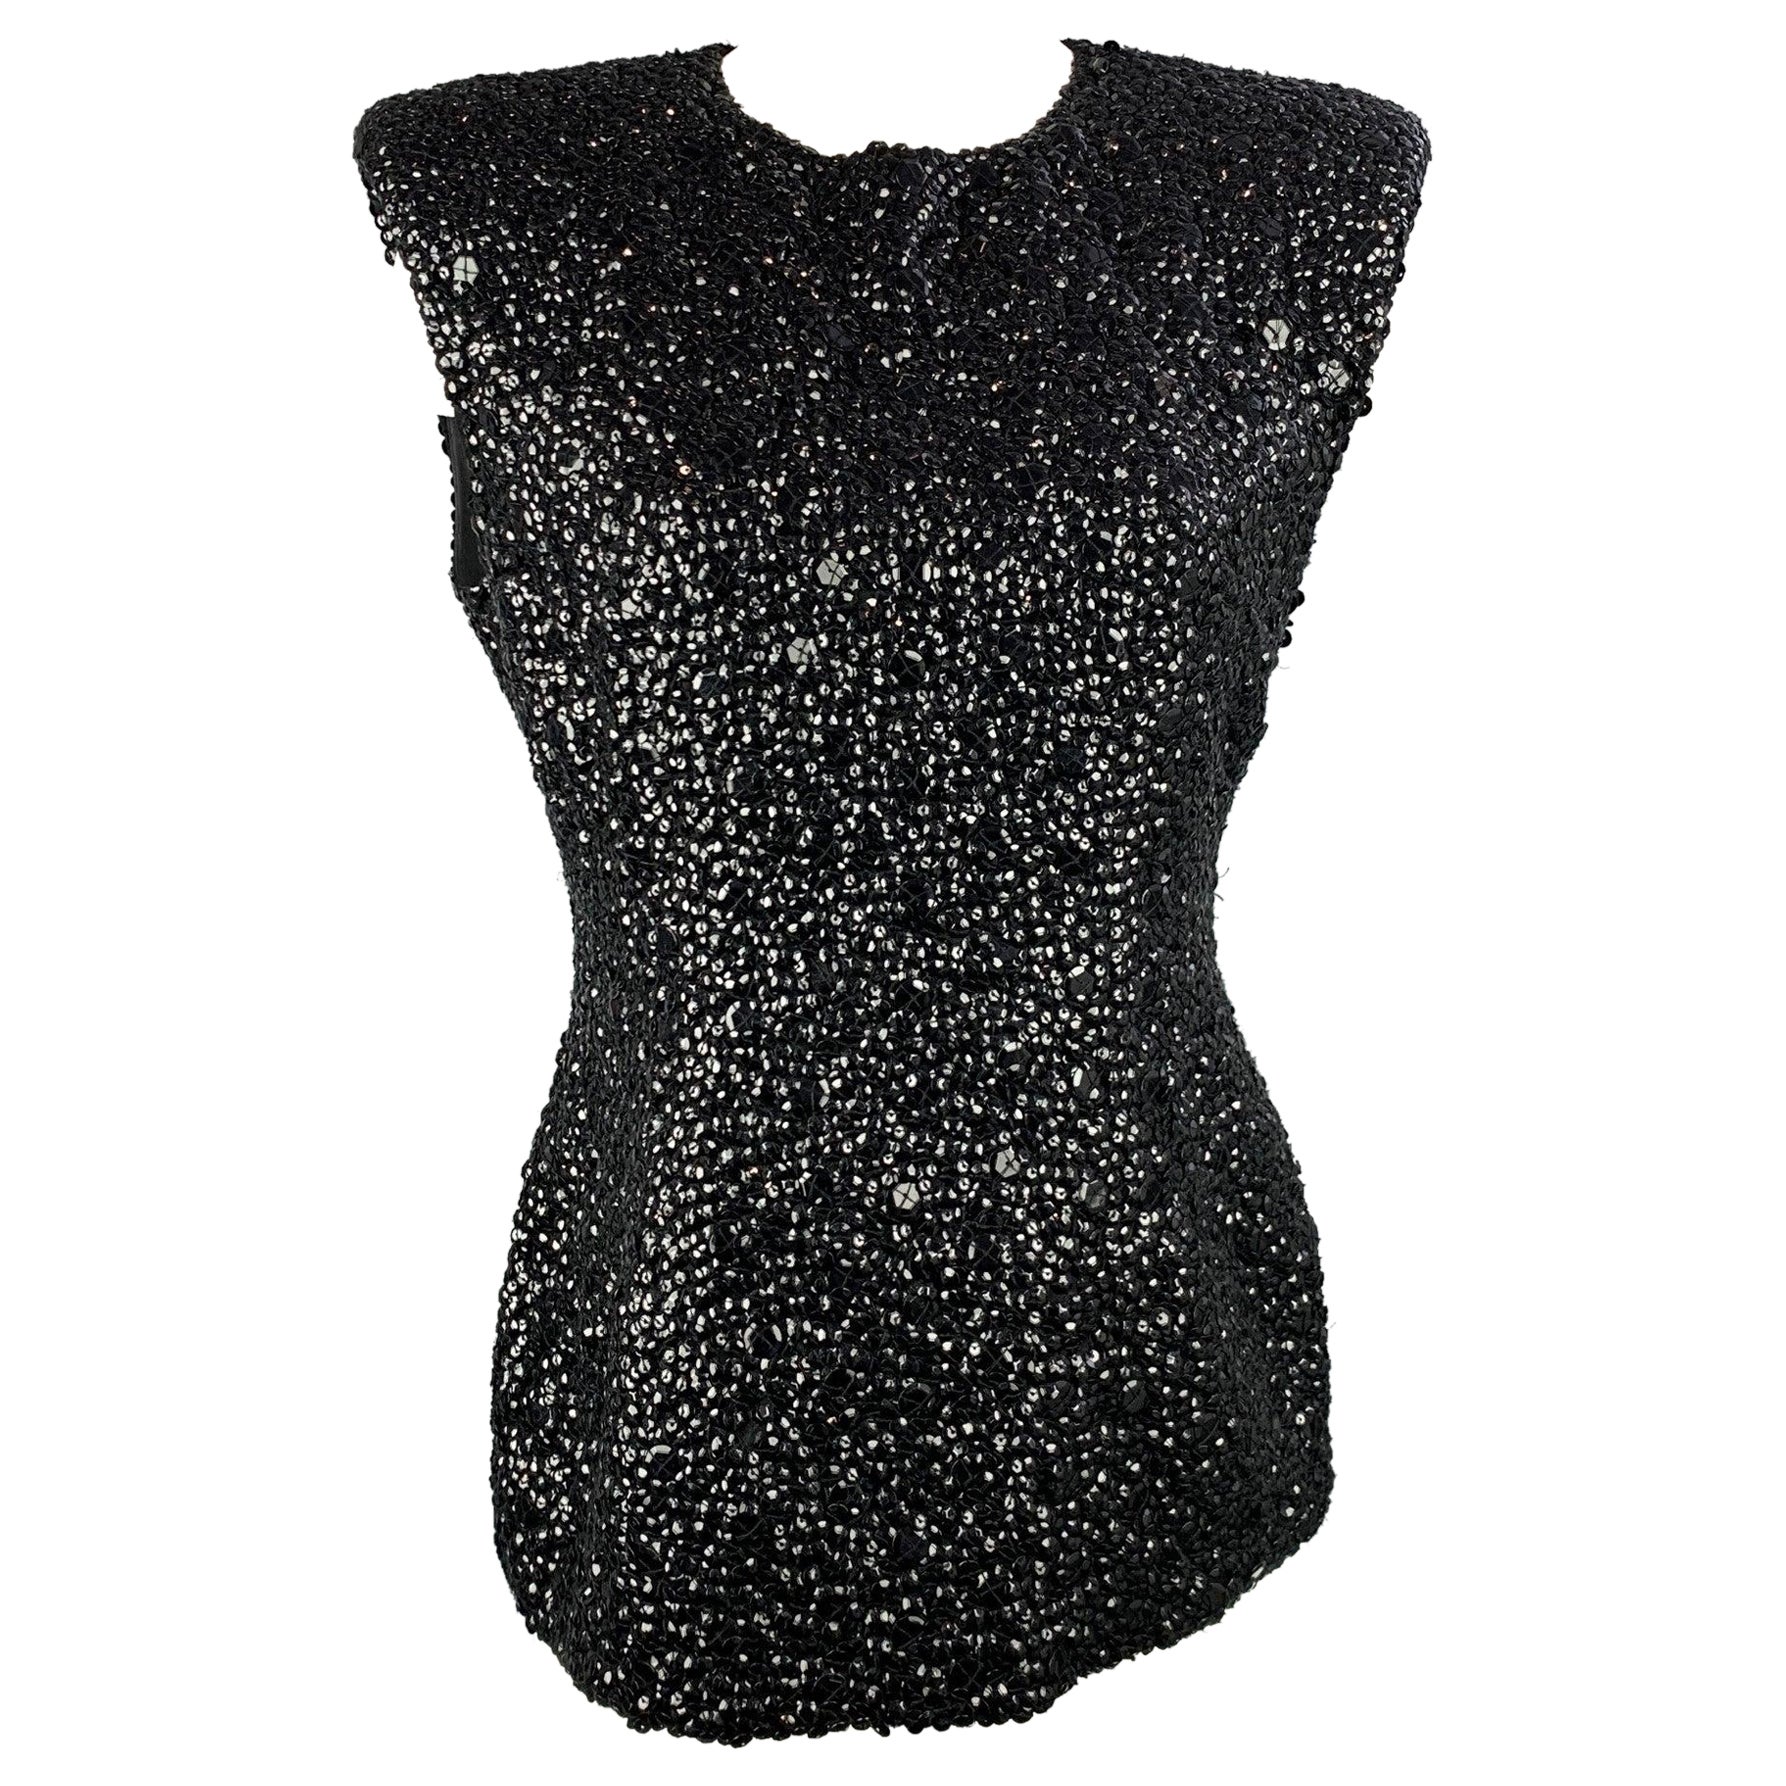 DRIES VAN NOTEN Size 6 Black Sequined Textured Viscose Dress Top For Sale